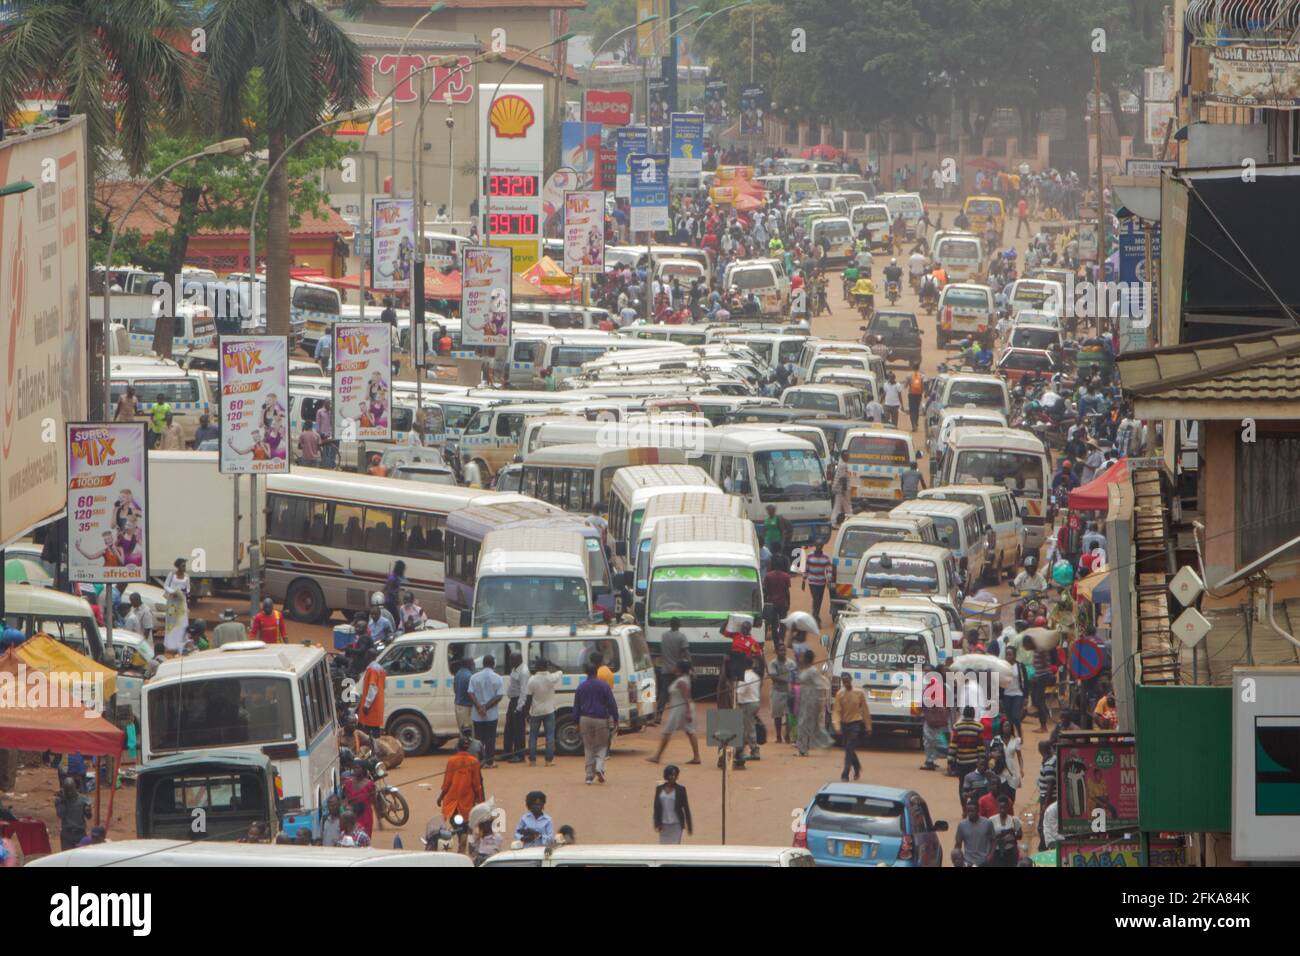 Old Taxi Park, der wichtigste Knotenpunkt für öffentliche Verkehrsmittel in Kampala, Uganda. Stockfoto